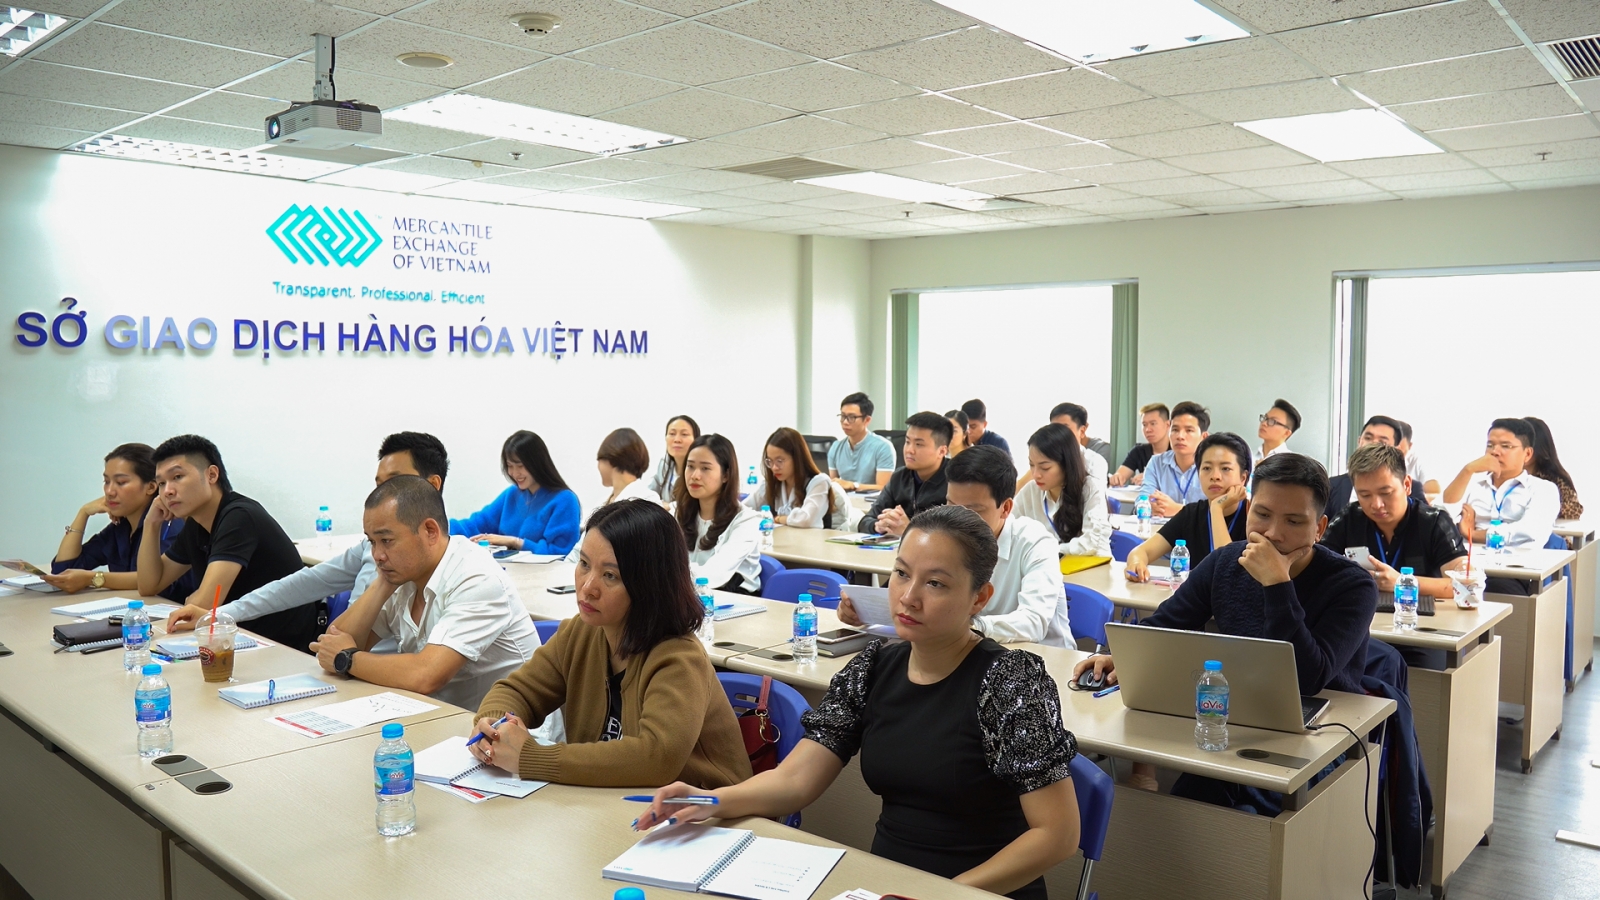 Sở Giao dịch Hàng hóa Việt Nam (MXV) khai giảng Khóa đào tạo nâng cao tháng 3/2021